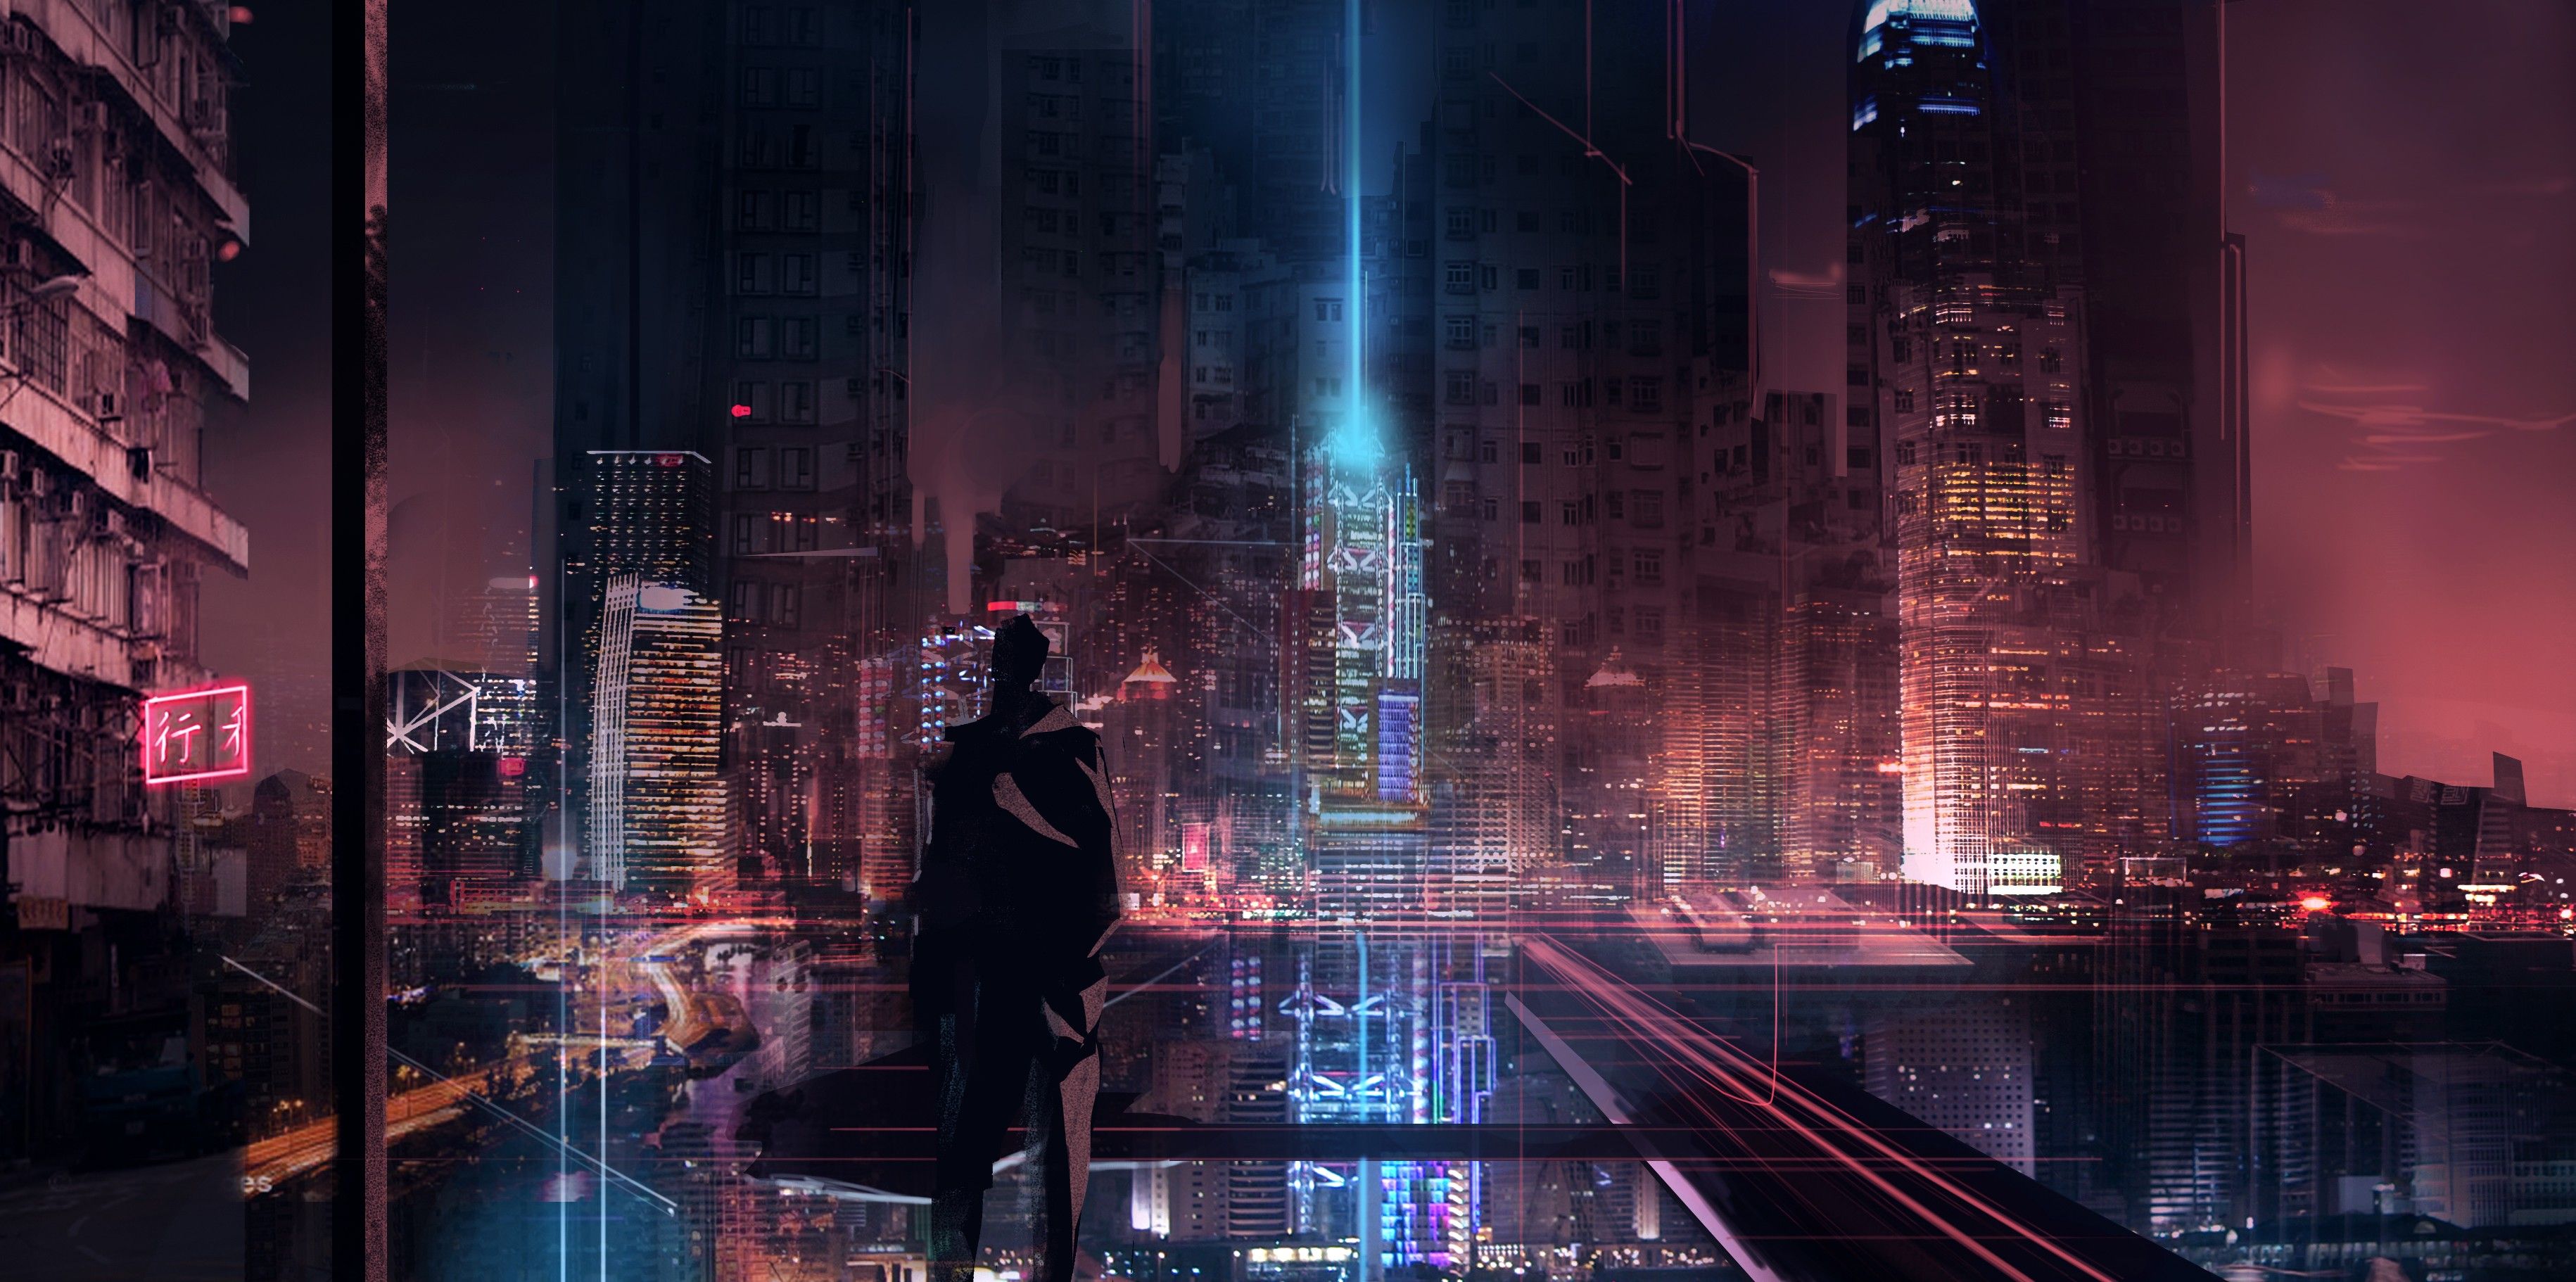 #cyberpunk, #skyscraper, #glowing, #futuristic city